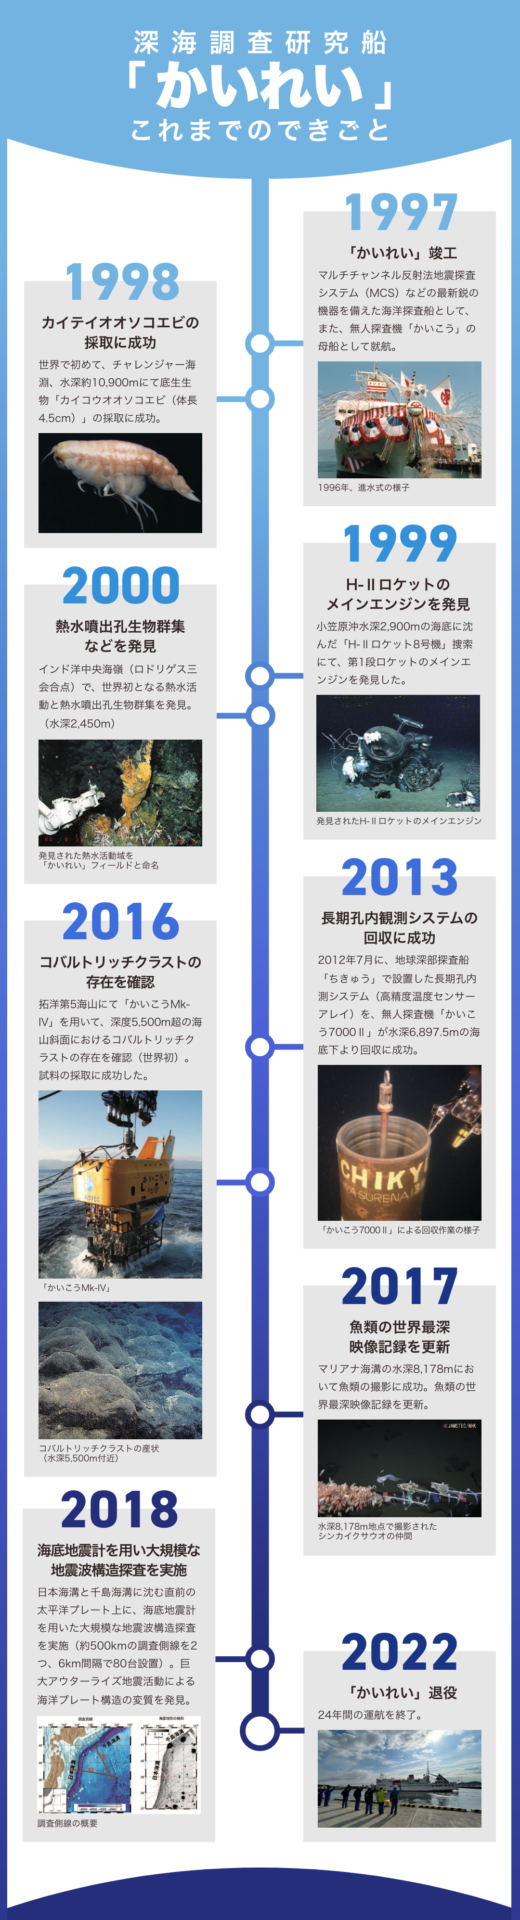 深海調査研究船「かいれい」の残した功績の歴史の年表